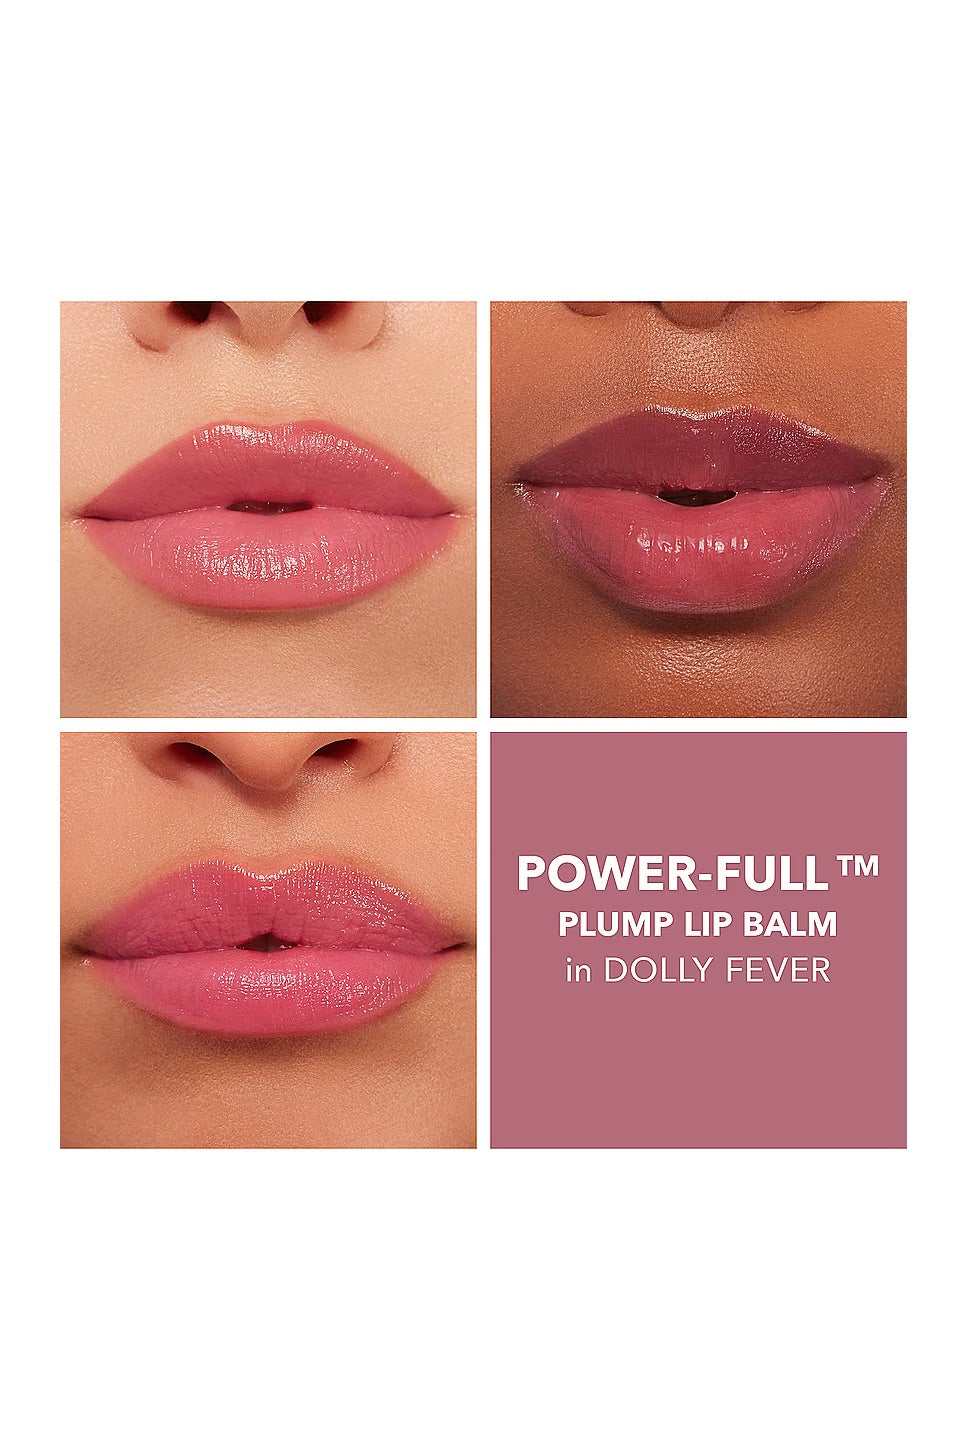 Buxom - Power Full Plump Lip Balm - Dolly Fever